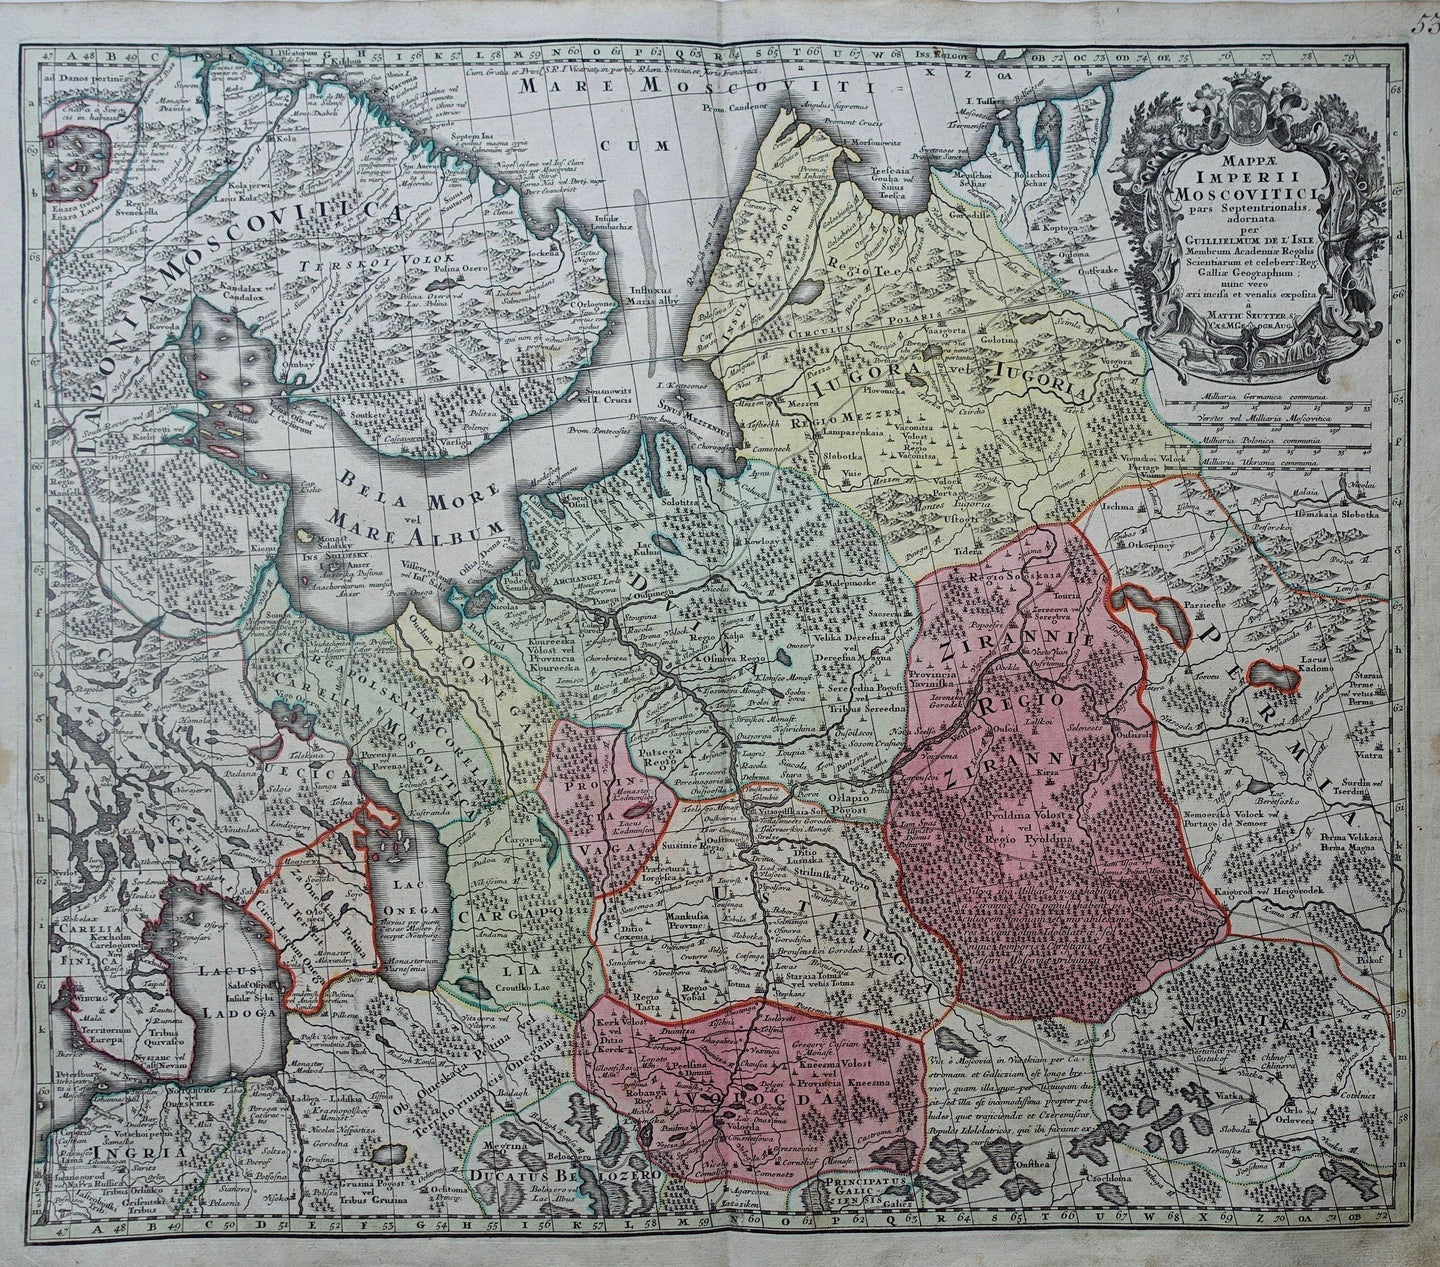 Rusland noordelijk deel Europees Rusland Russia northern European Russia - M Seutter - ca. 1730